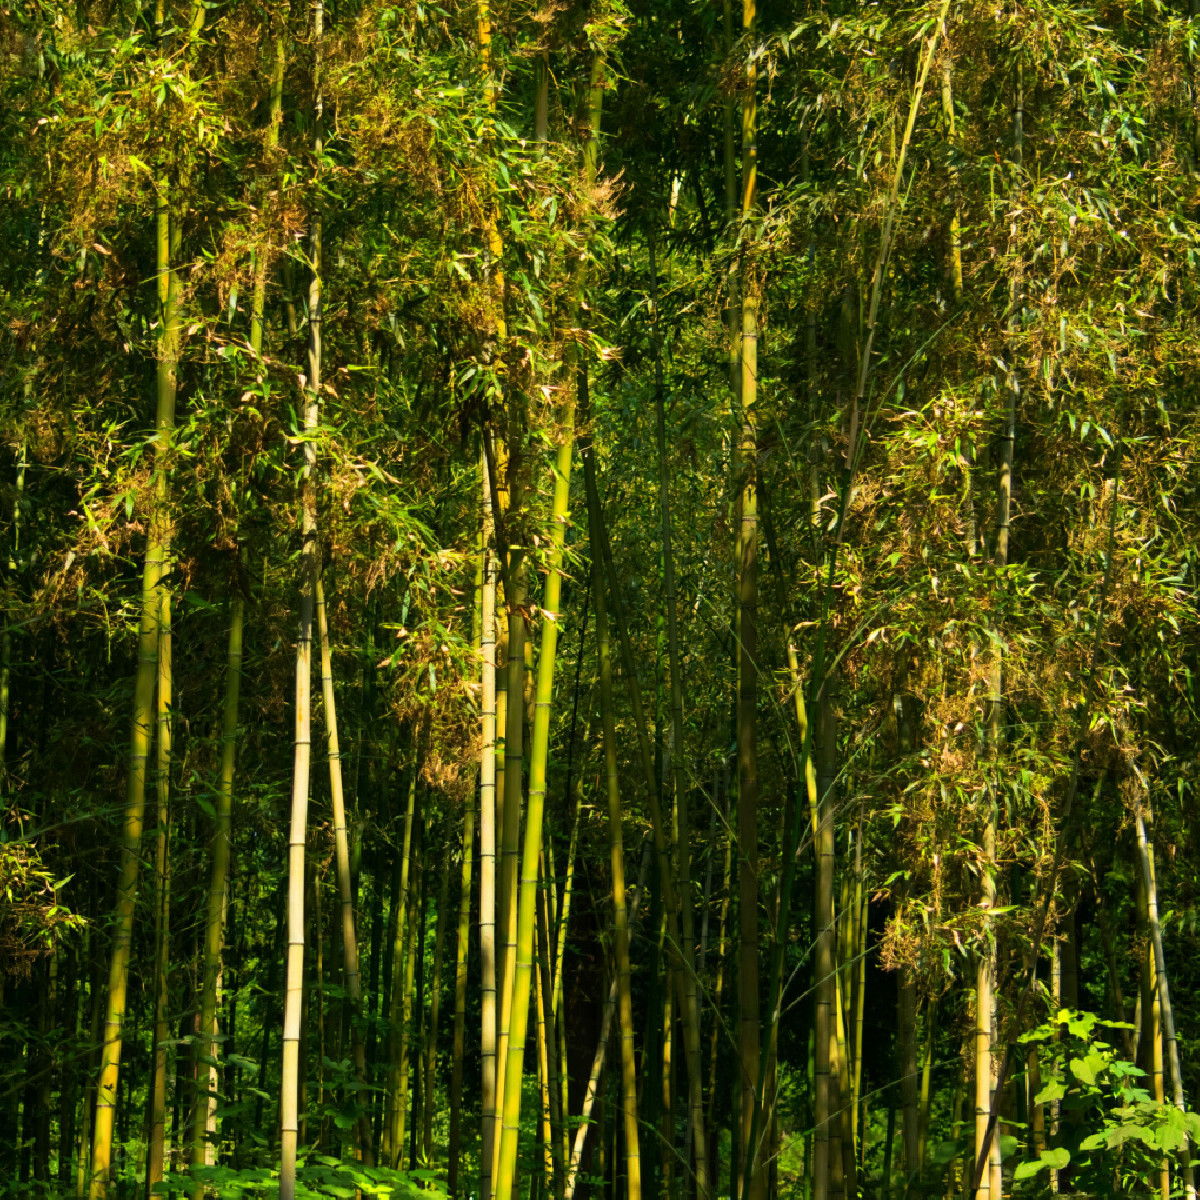 Král bambusů - Phyllostachys pubescens - semena bambusu - 3 ks